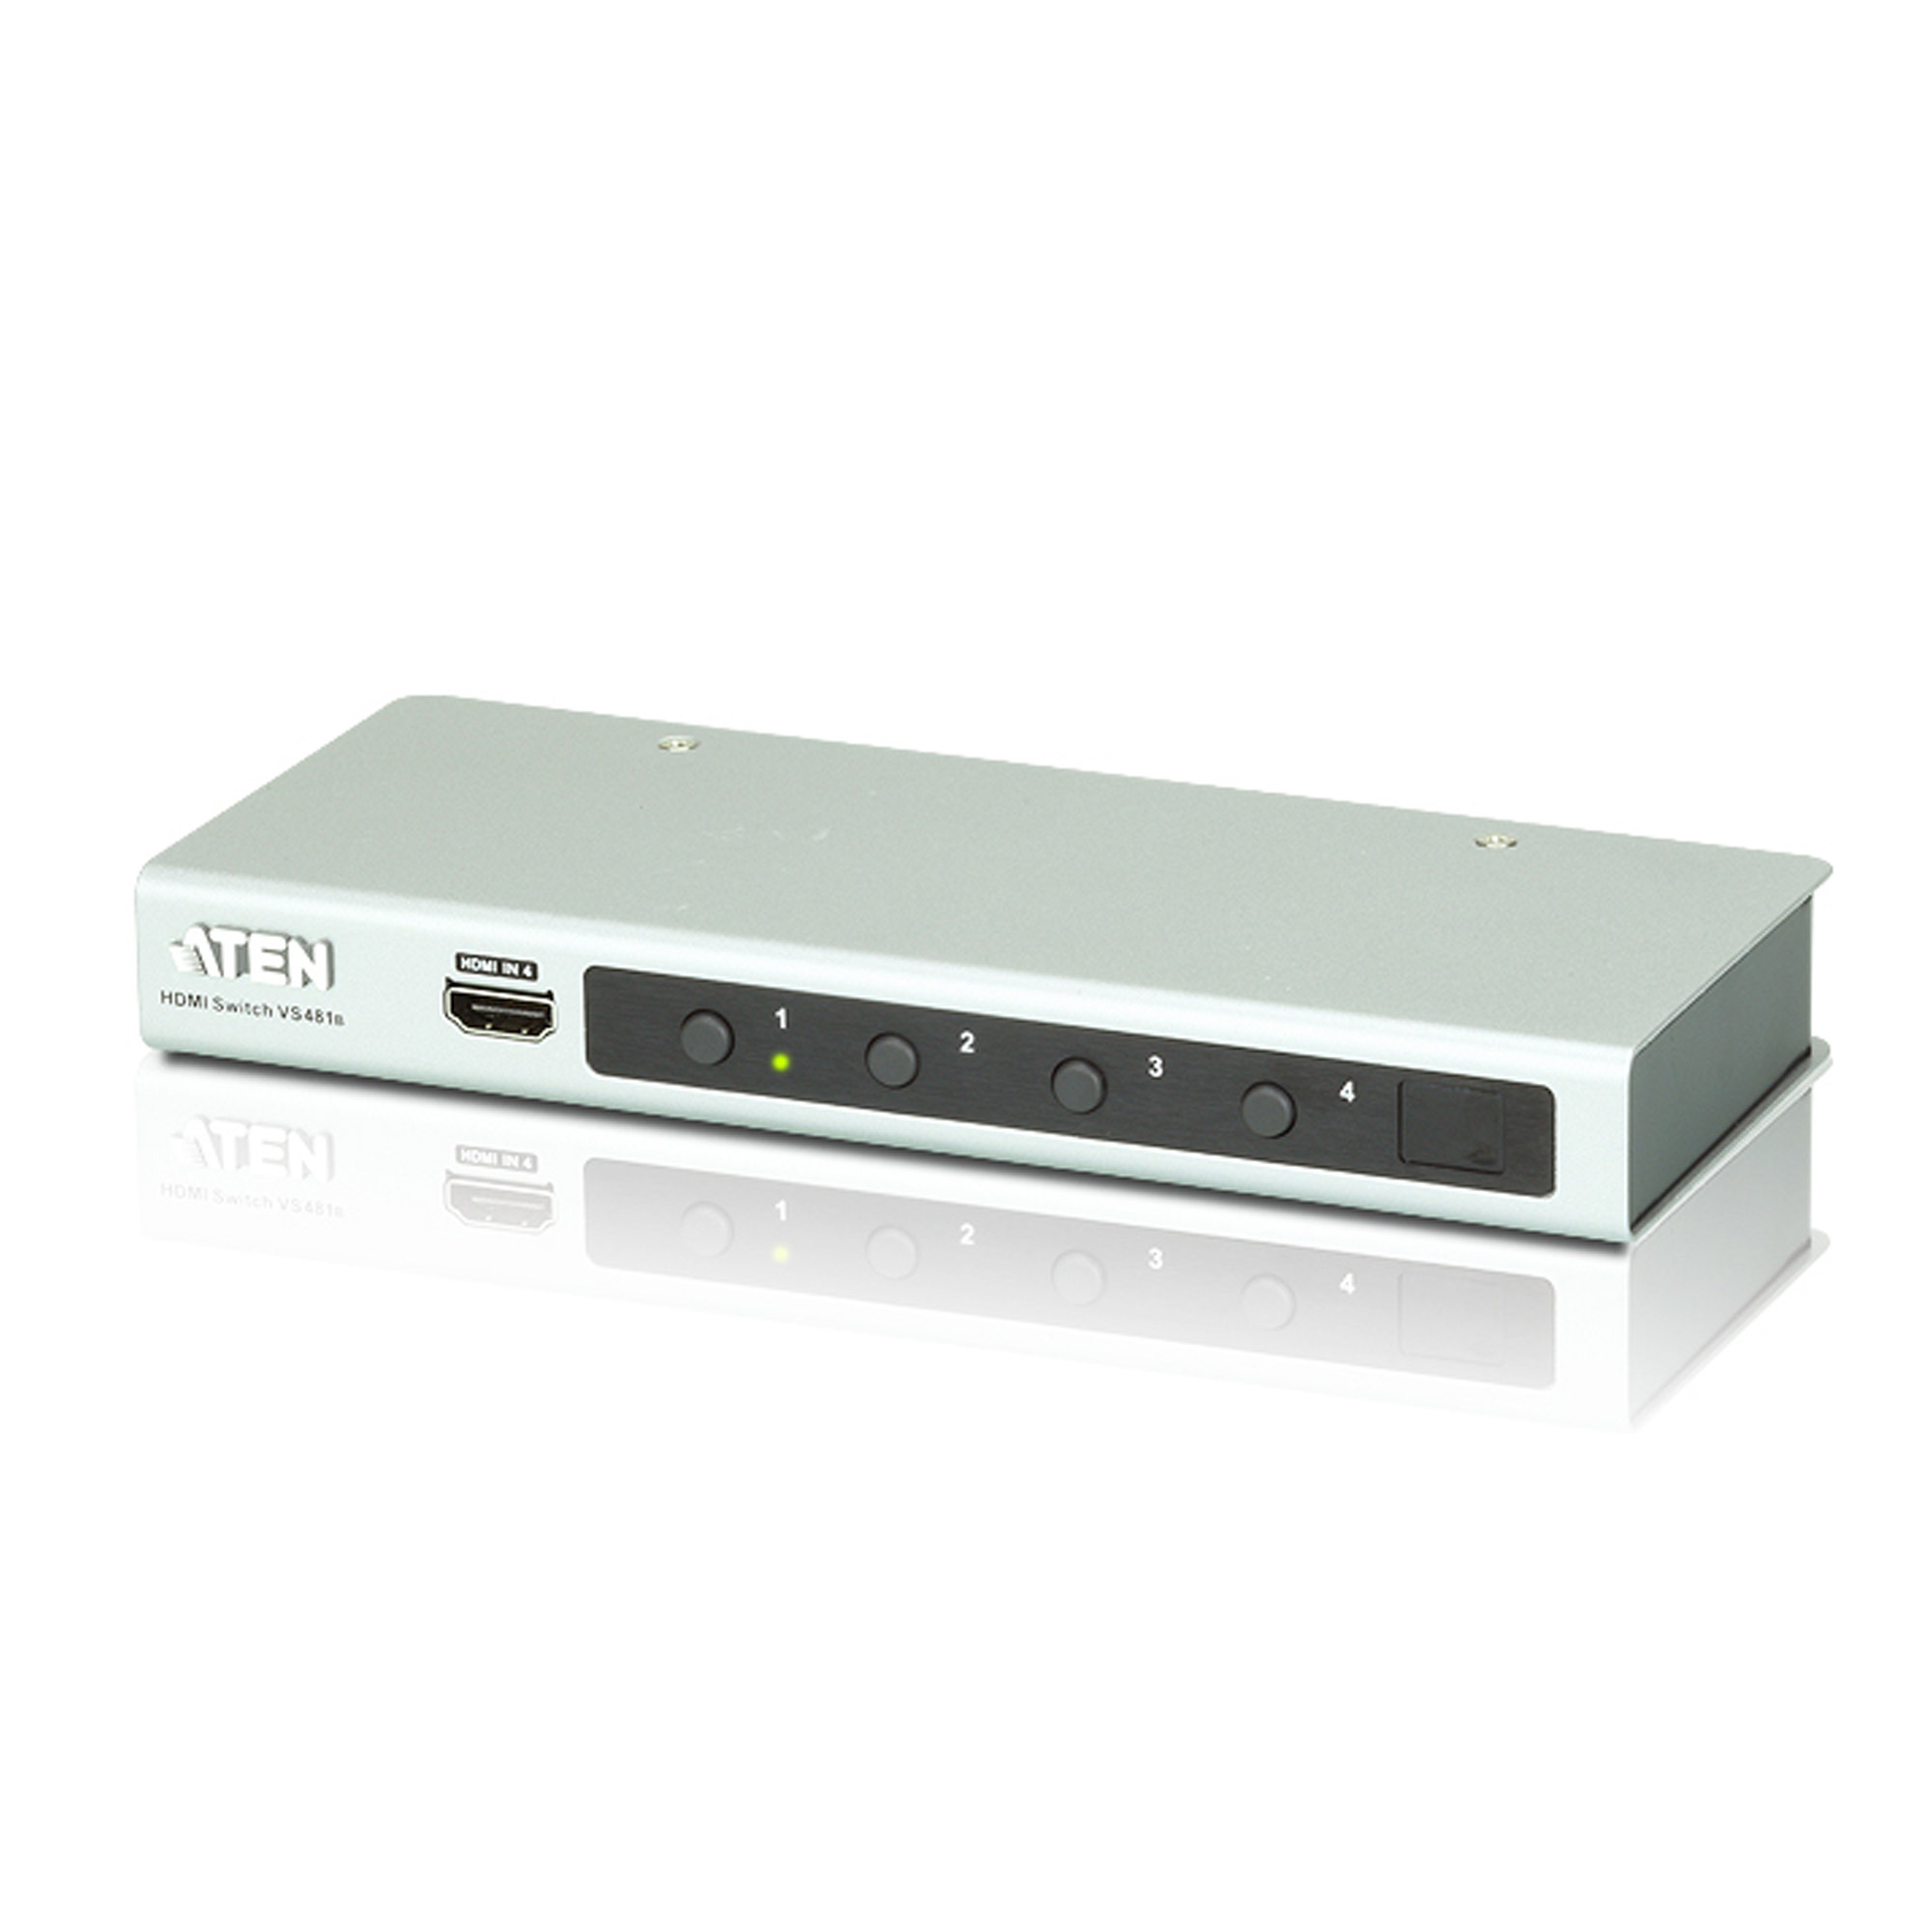 ATEN VS481B Video-Switch HDMI 4-fach Umschalter mit Fernbedienung